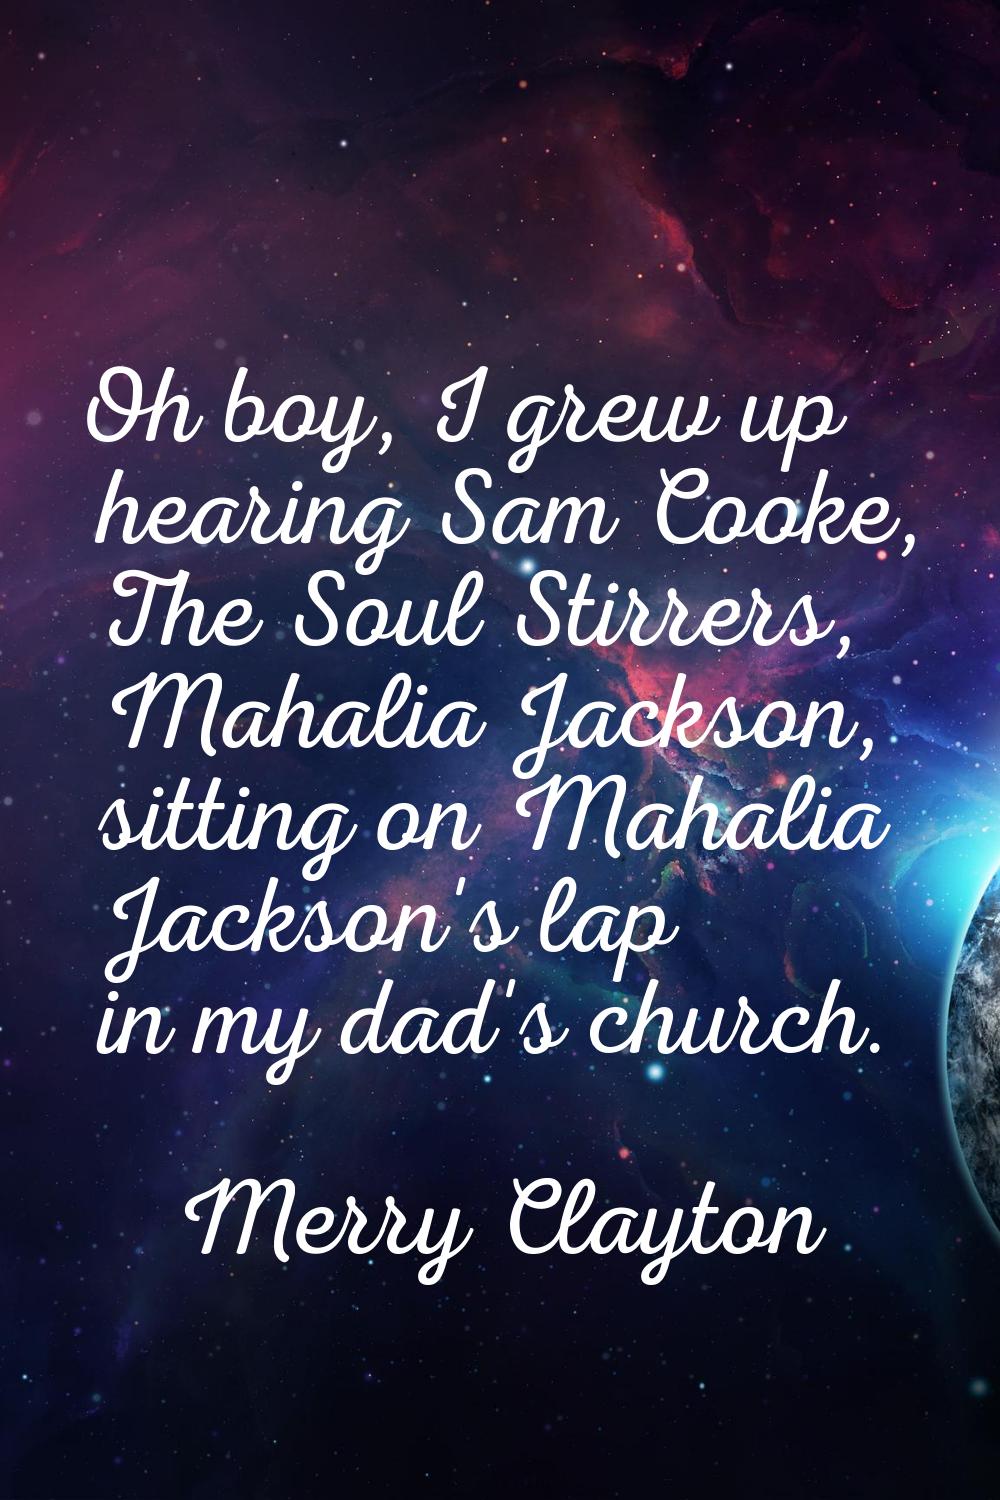 Oh boy, I grew up hearing Sam Cooke, The Soul Stirrers, Mahalia Jackson, sitting on Mahalia Jackson